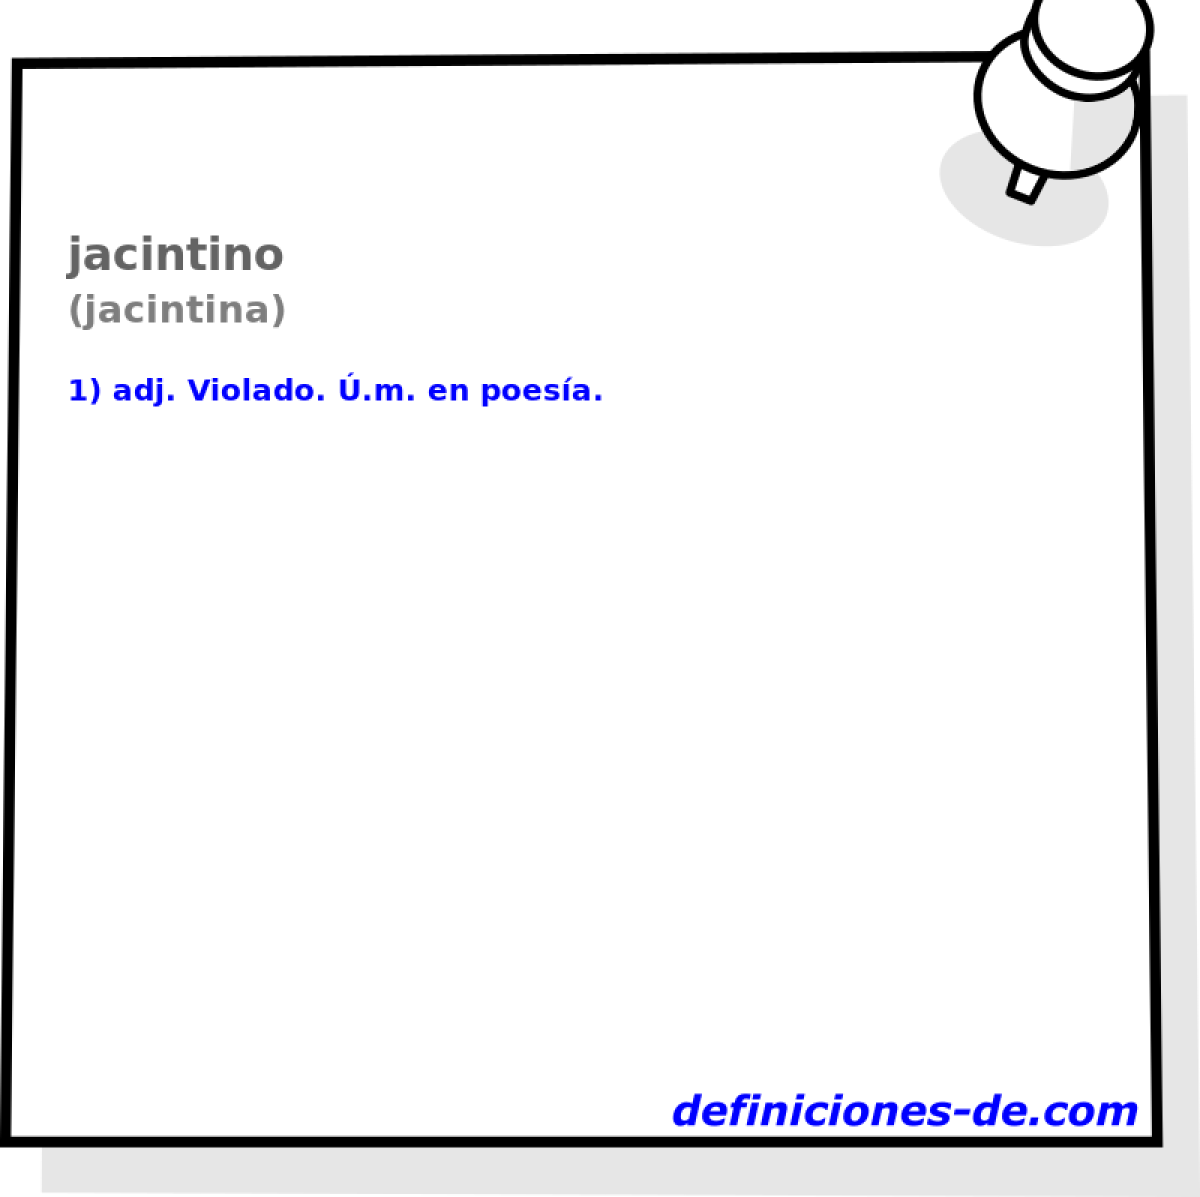 jacintino (jacintina)